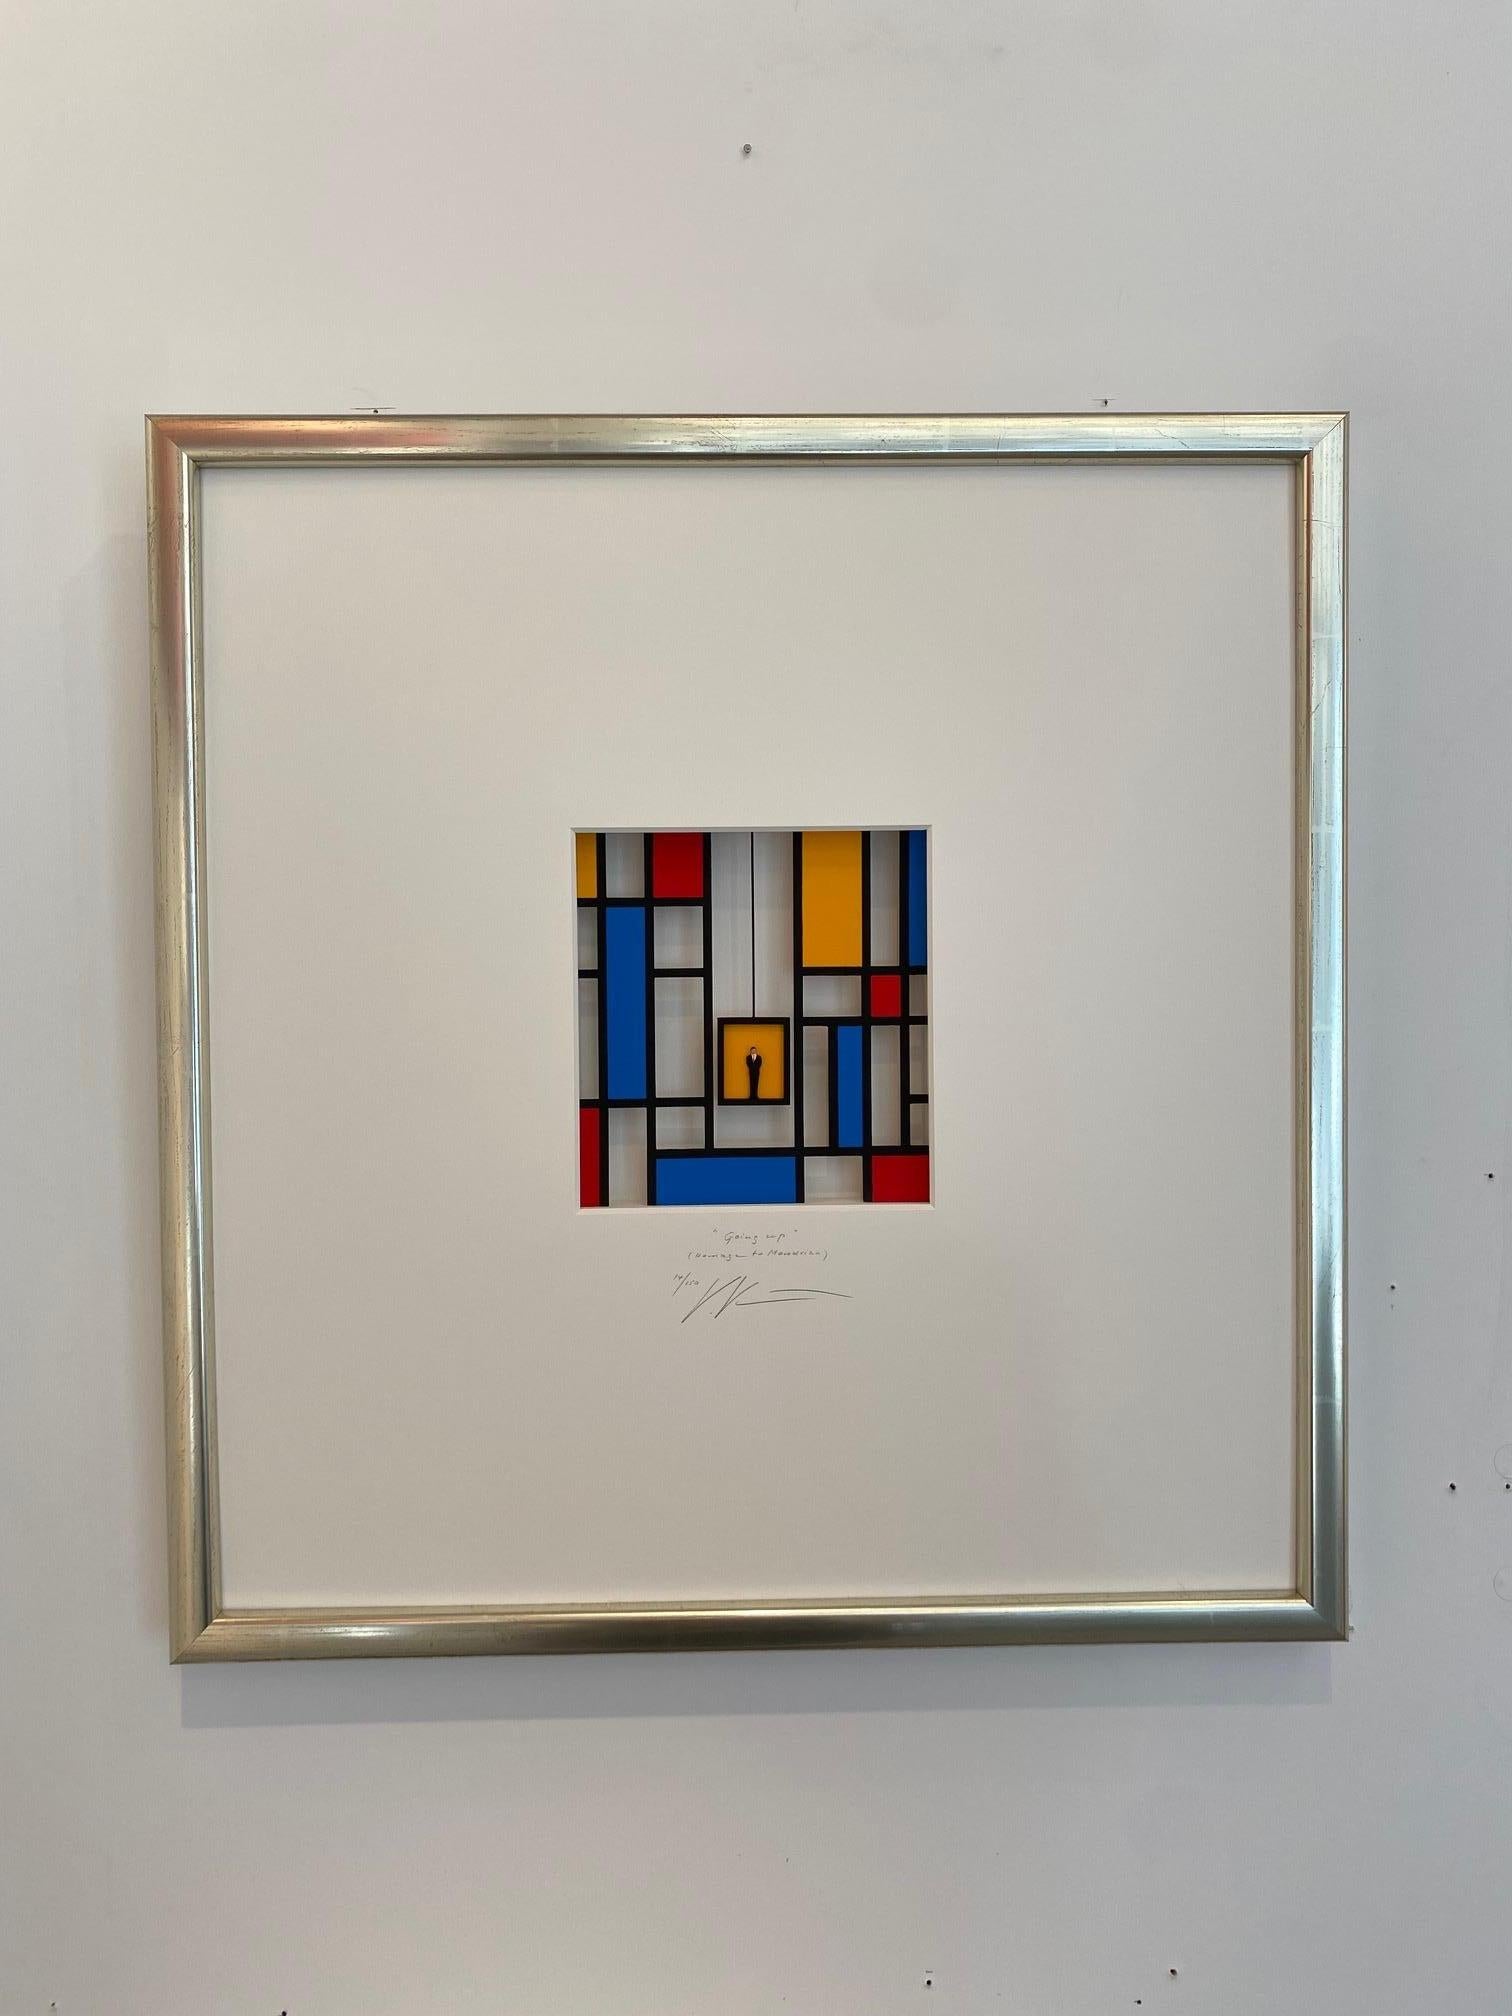 Homage to Mondrian - Going Up - zeitgenössische Kunstwerke, Design- Hommage an den niederländischen Meister (Assemblage), Mixed Media Art, von Volker Kuhn